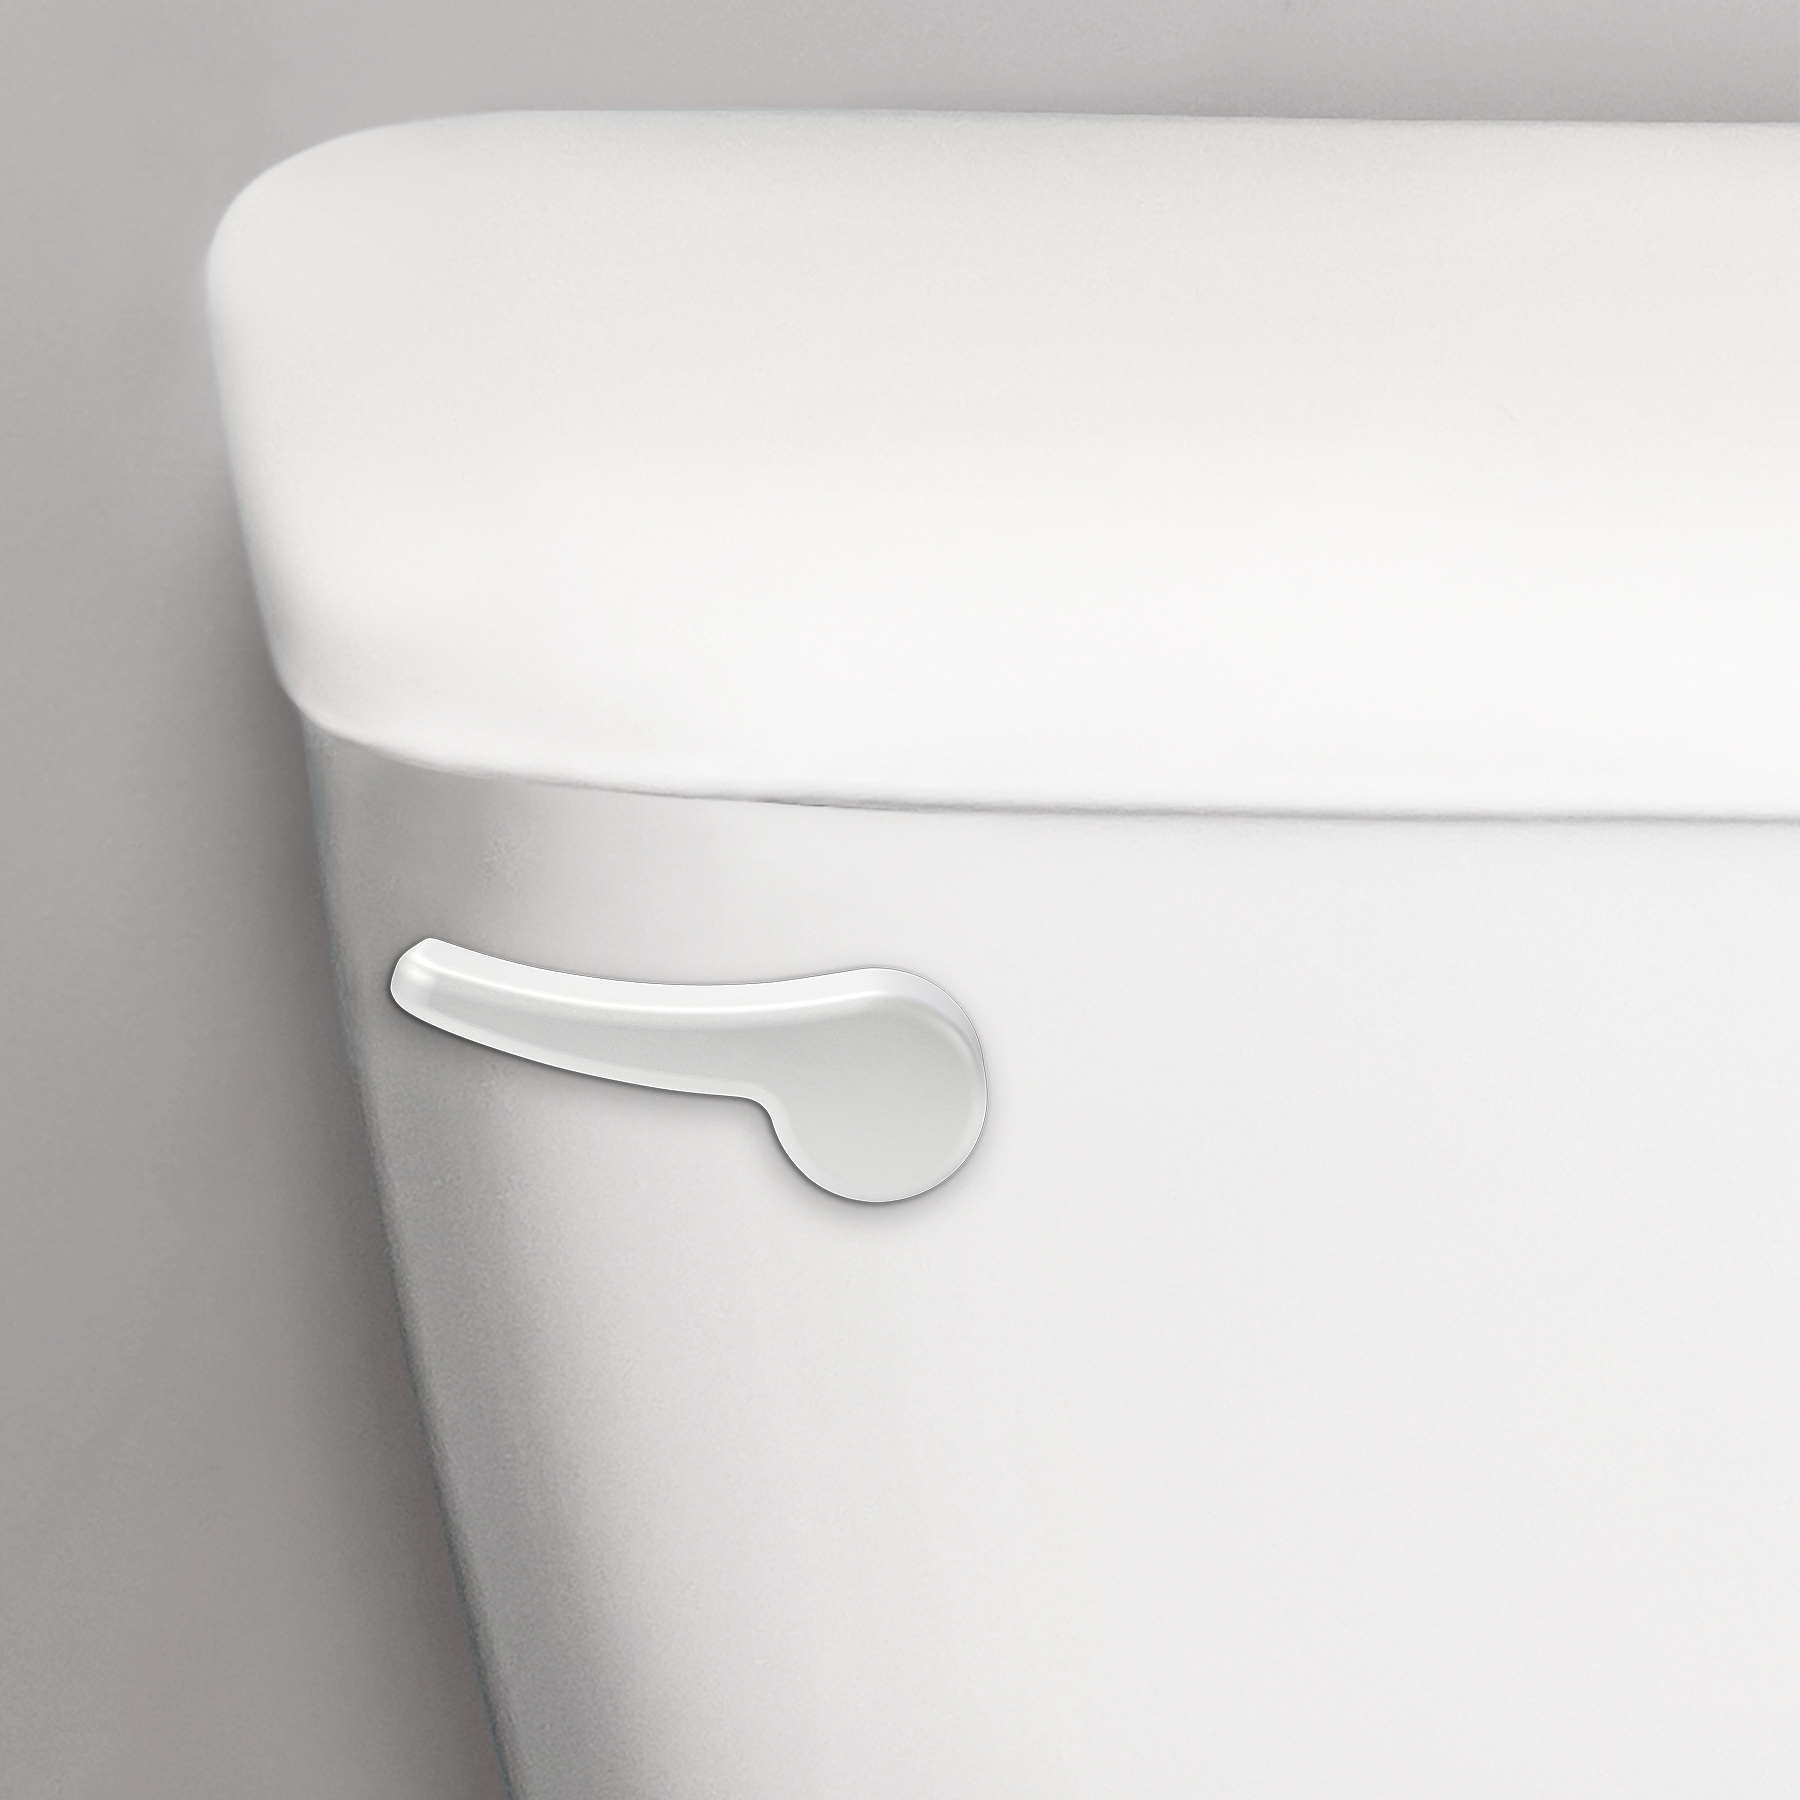 white toilet flush handle on a toilet